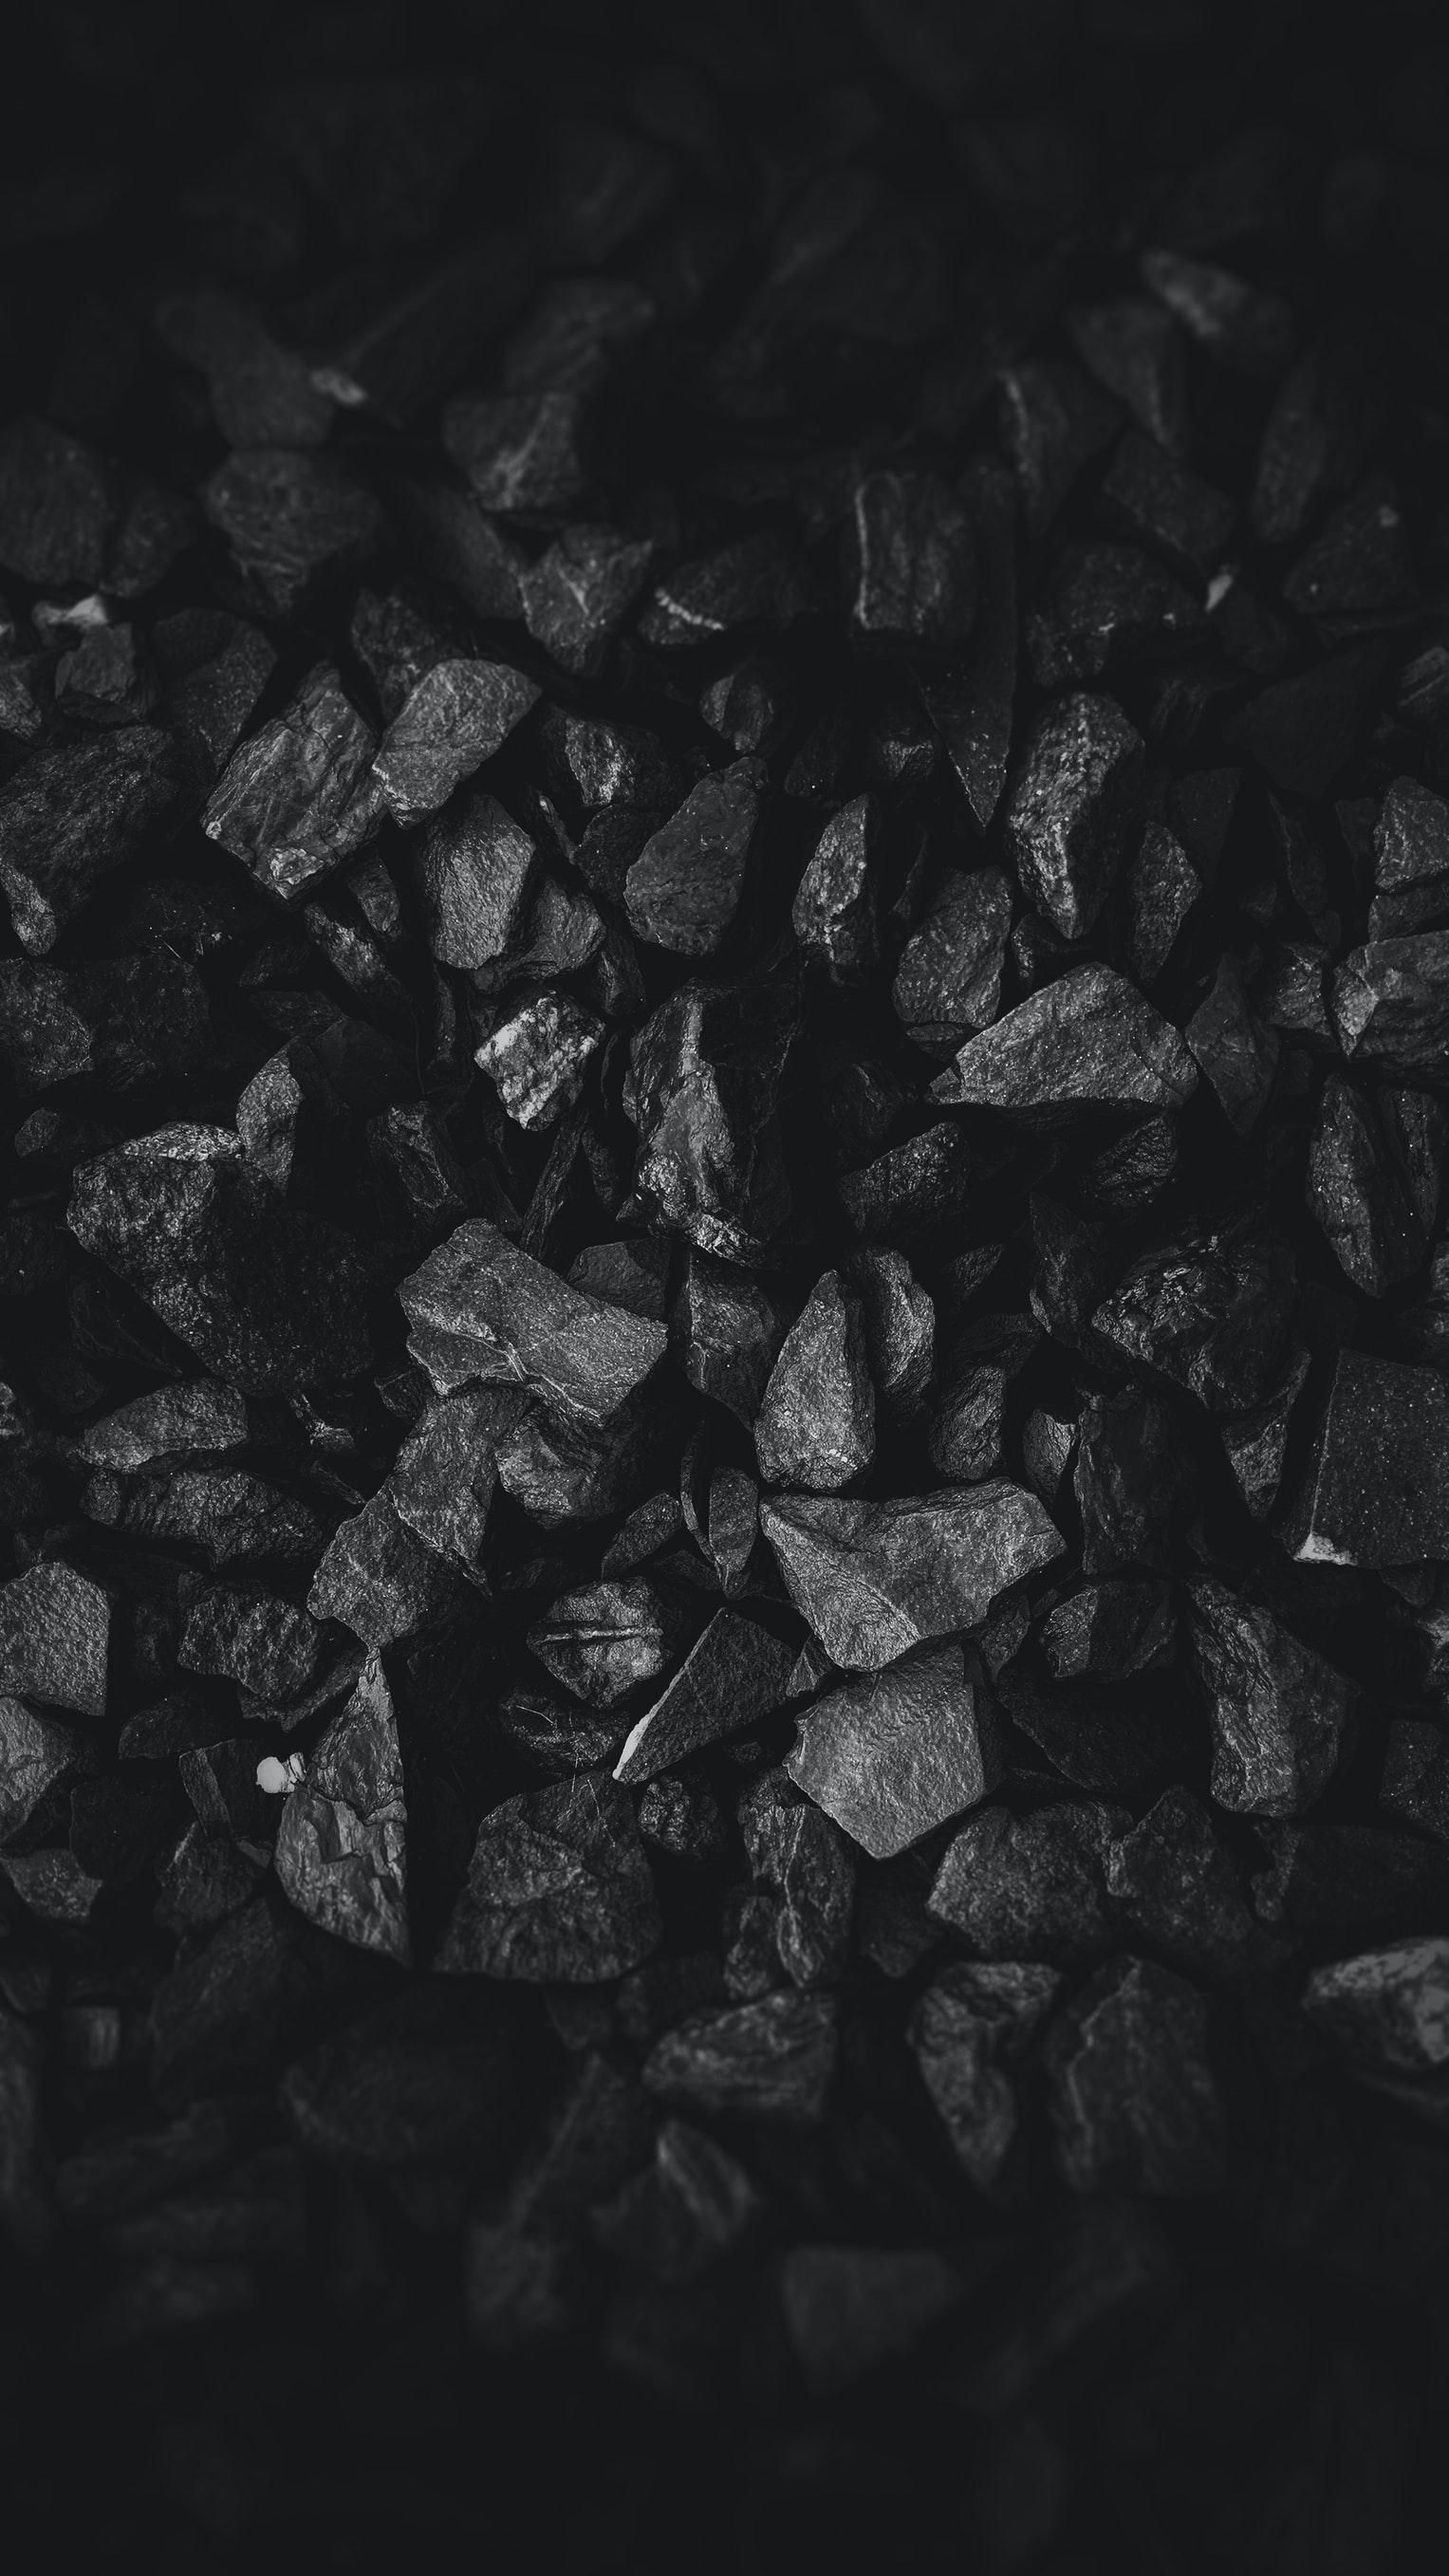 Китай готов покупать уголь за любую цену: что это значит для рынка и цен в мире - Финансы